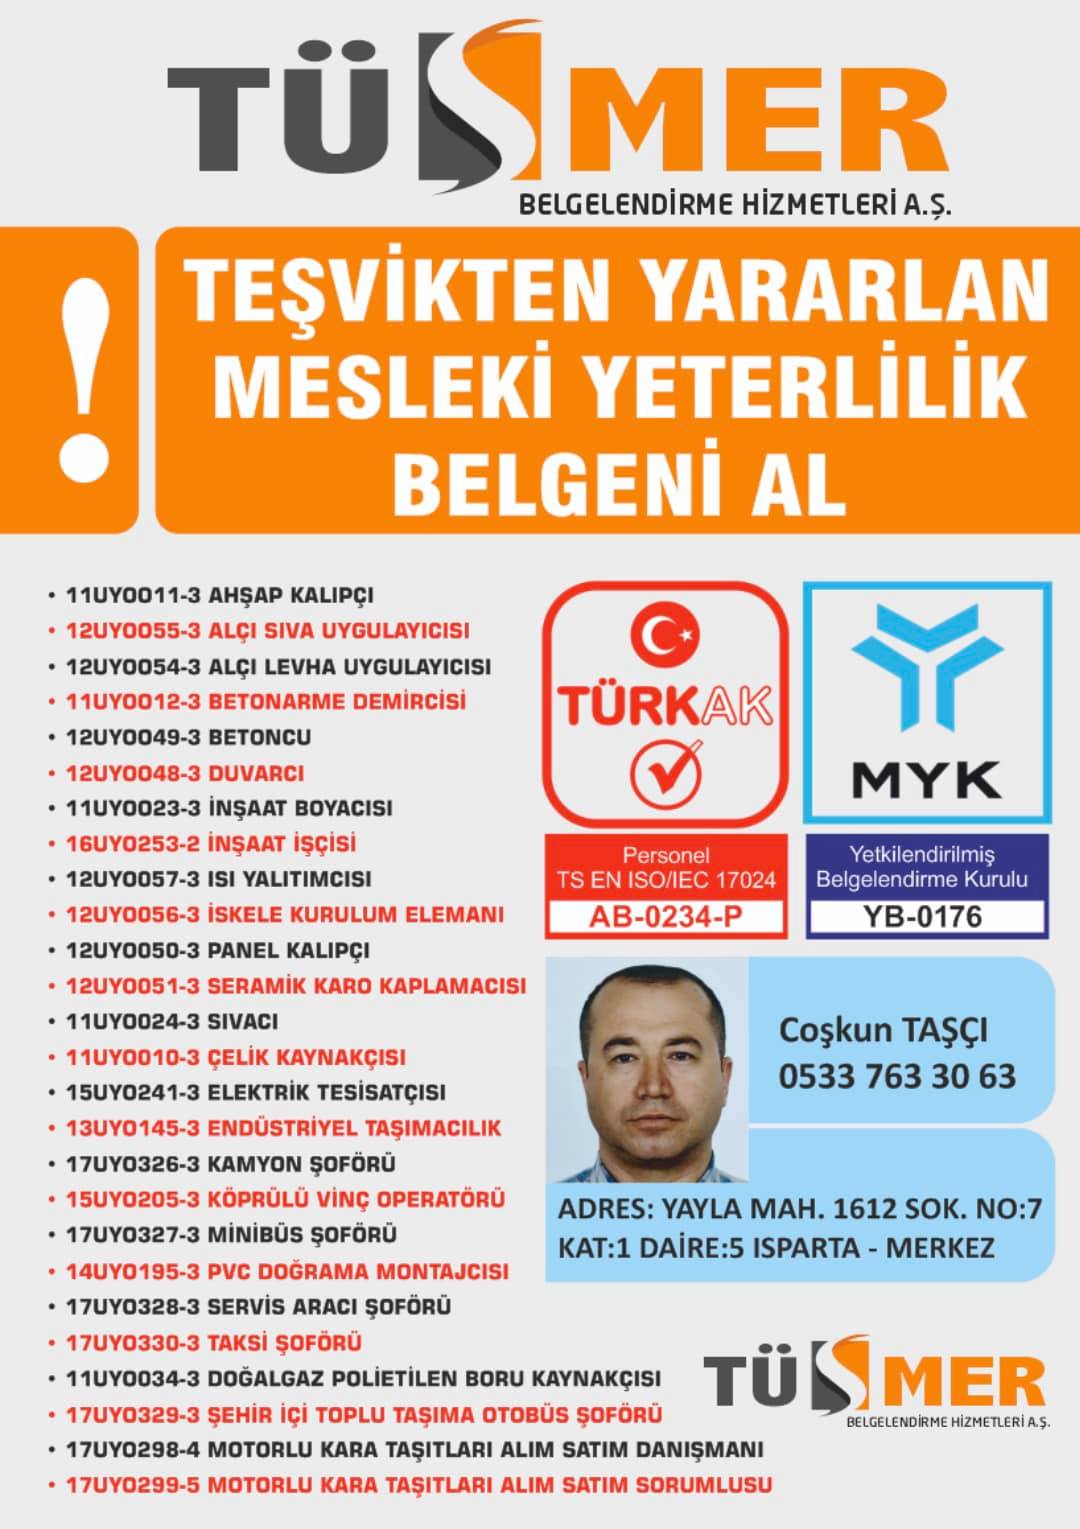 MYK MESLEKİ YETERLİLİK BELGESİ Yenişehir Beyoğlu İstanbul